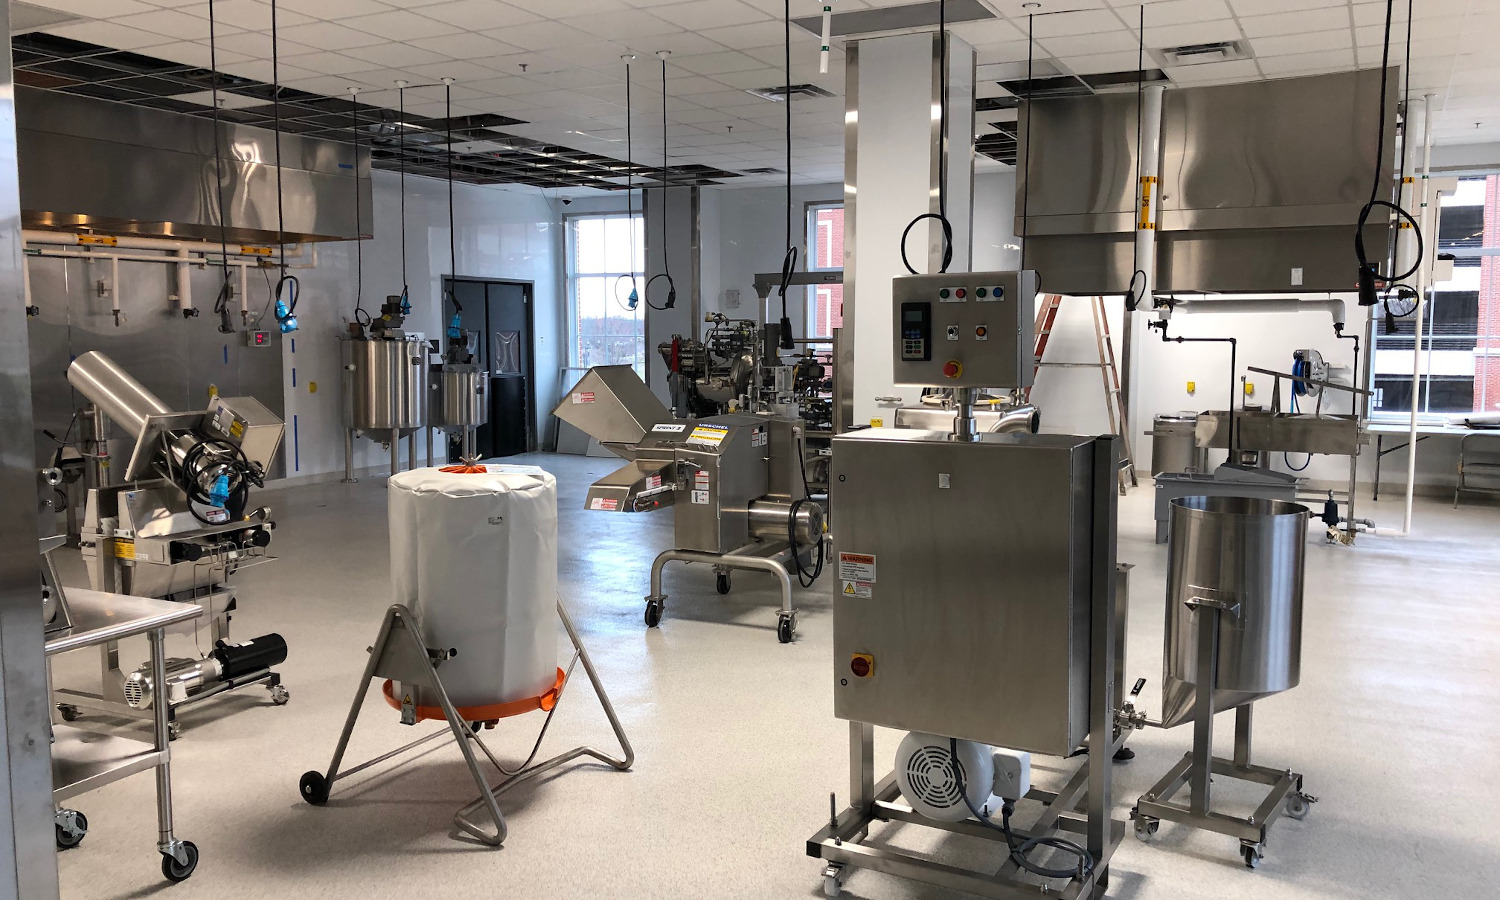 新实验室开放在北卡罗来纳州帮助企业家成长的植物性食品企业通过提供构思、开发和营销服务